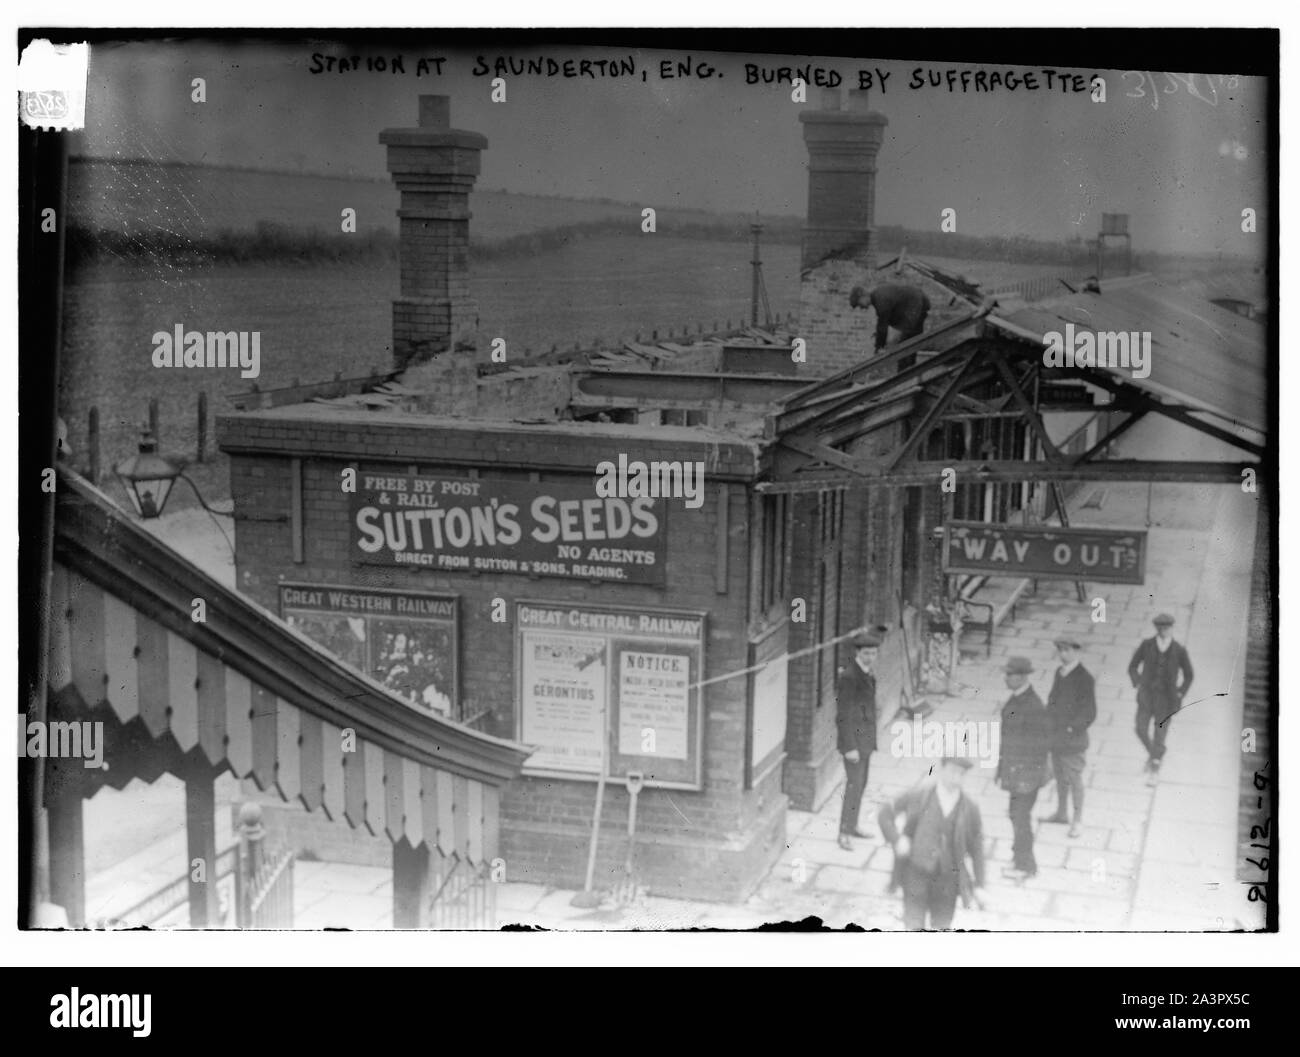 Stazione a Saunderton, Eng. Masterizzato da suffragettes Foto Stock